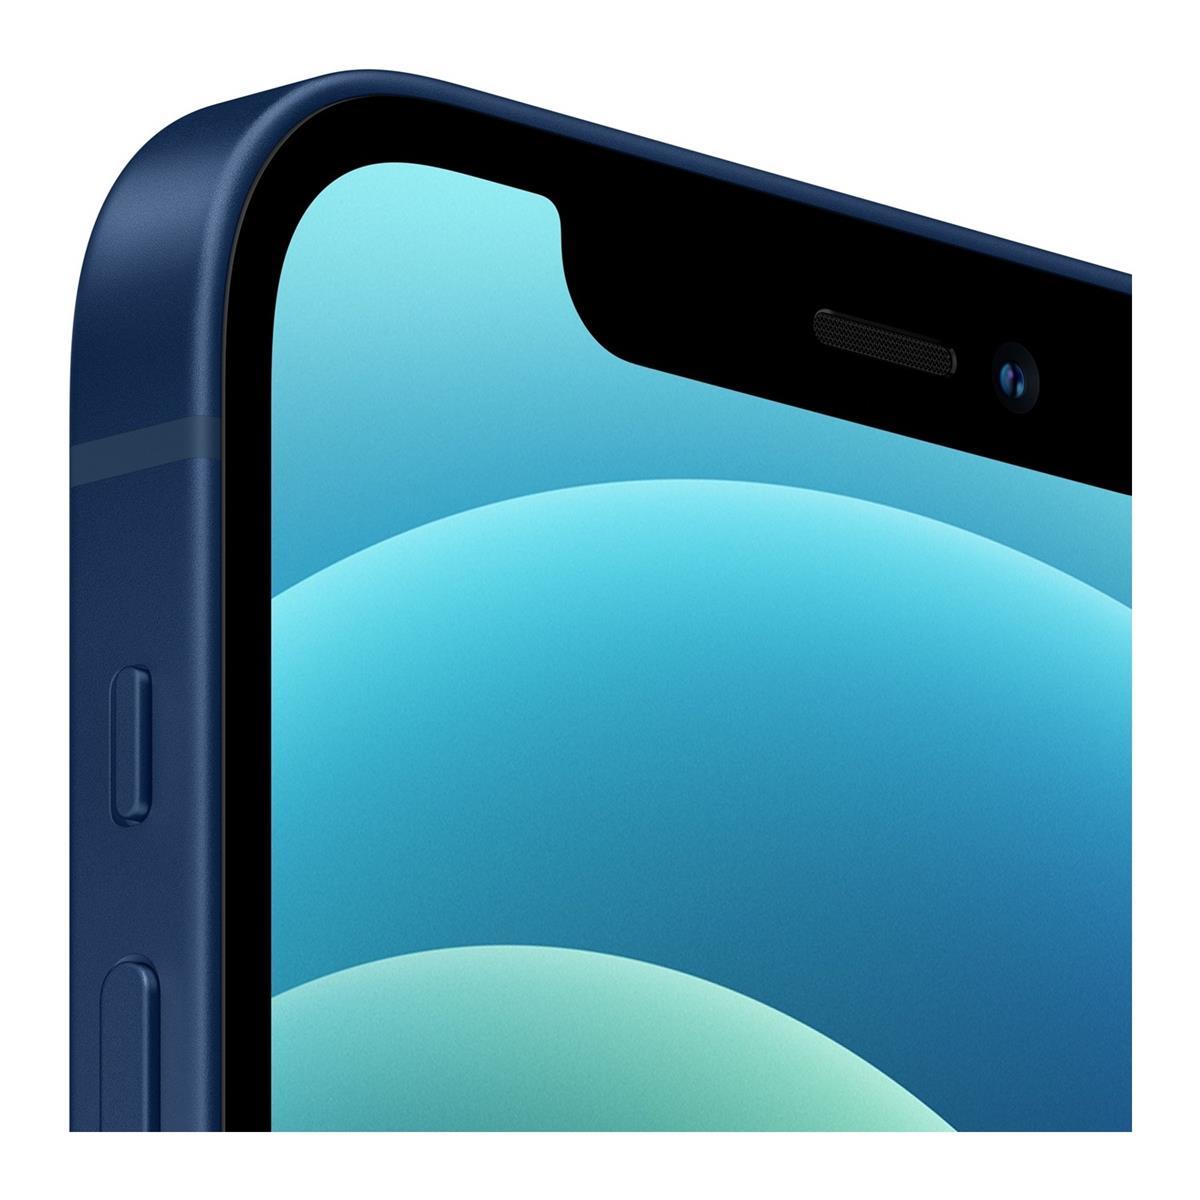 Kusursuz Kalitede Yenilenmiş iPhone 12 128 GB Mavi - Novomobil'de!